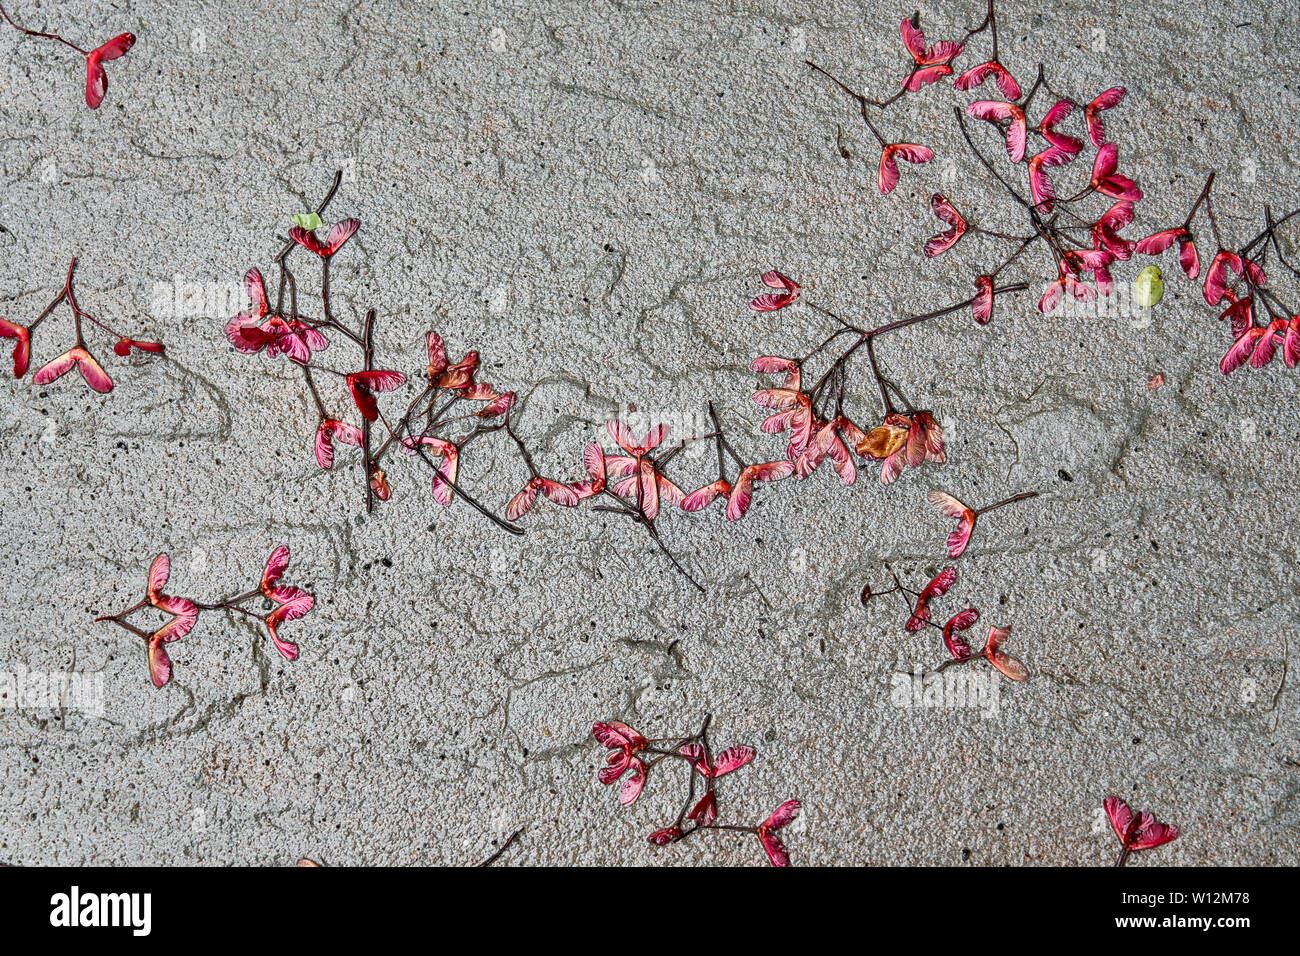 Hintergrund leuchtend roten Acer ahorn Samen auch bekannt als samaras, 'Maple Tasten', 'Hubschrauber', 'whirlybirds' oder 'polynoses" Festlegung auf einem nassen Stein sidew Stockfoto